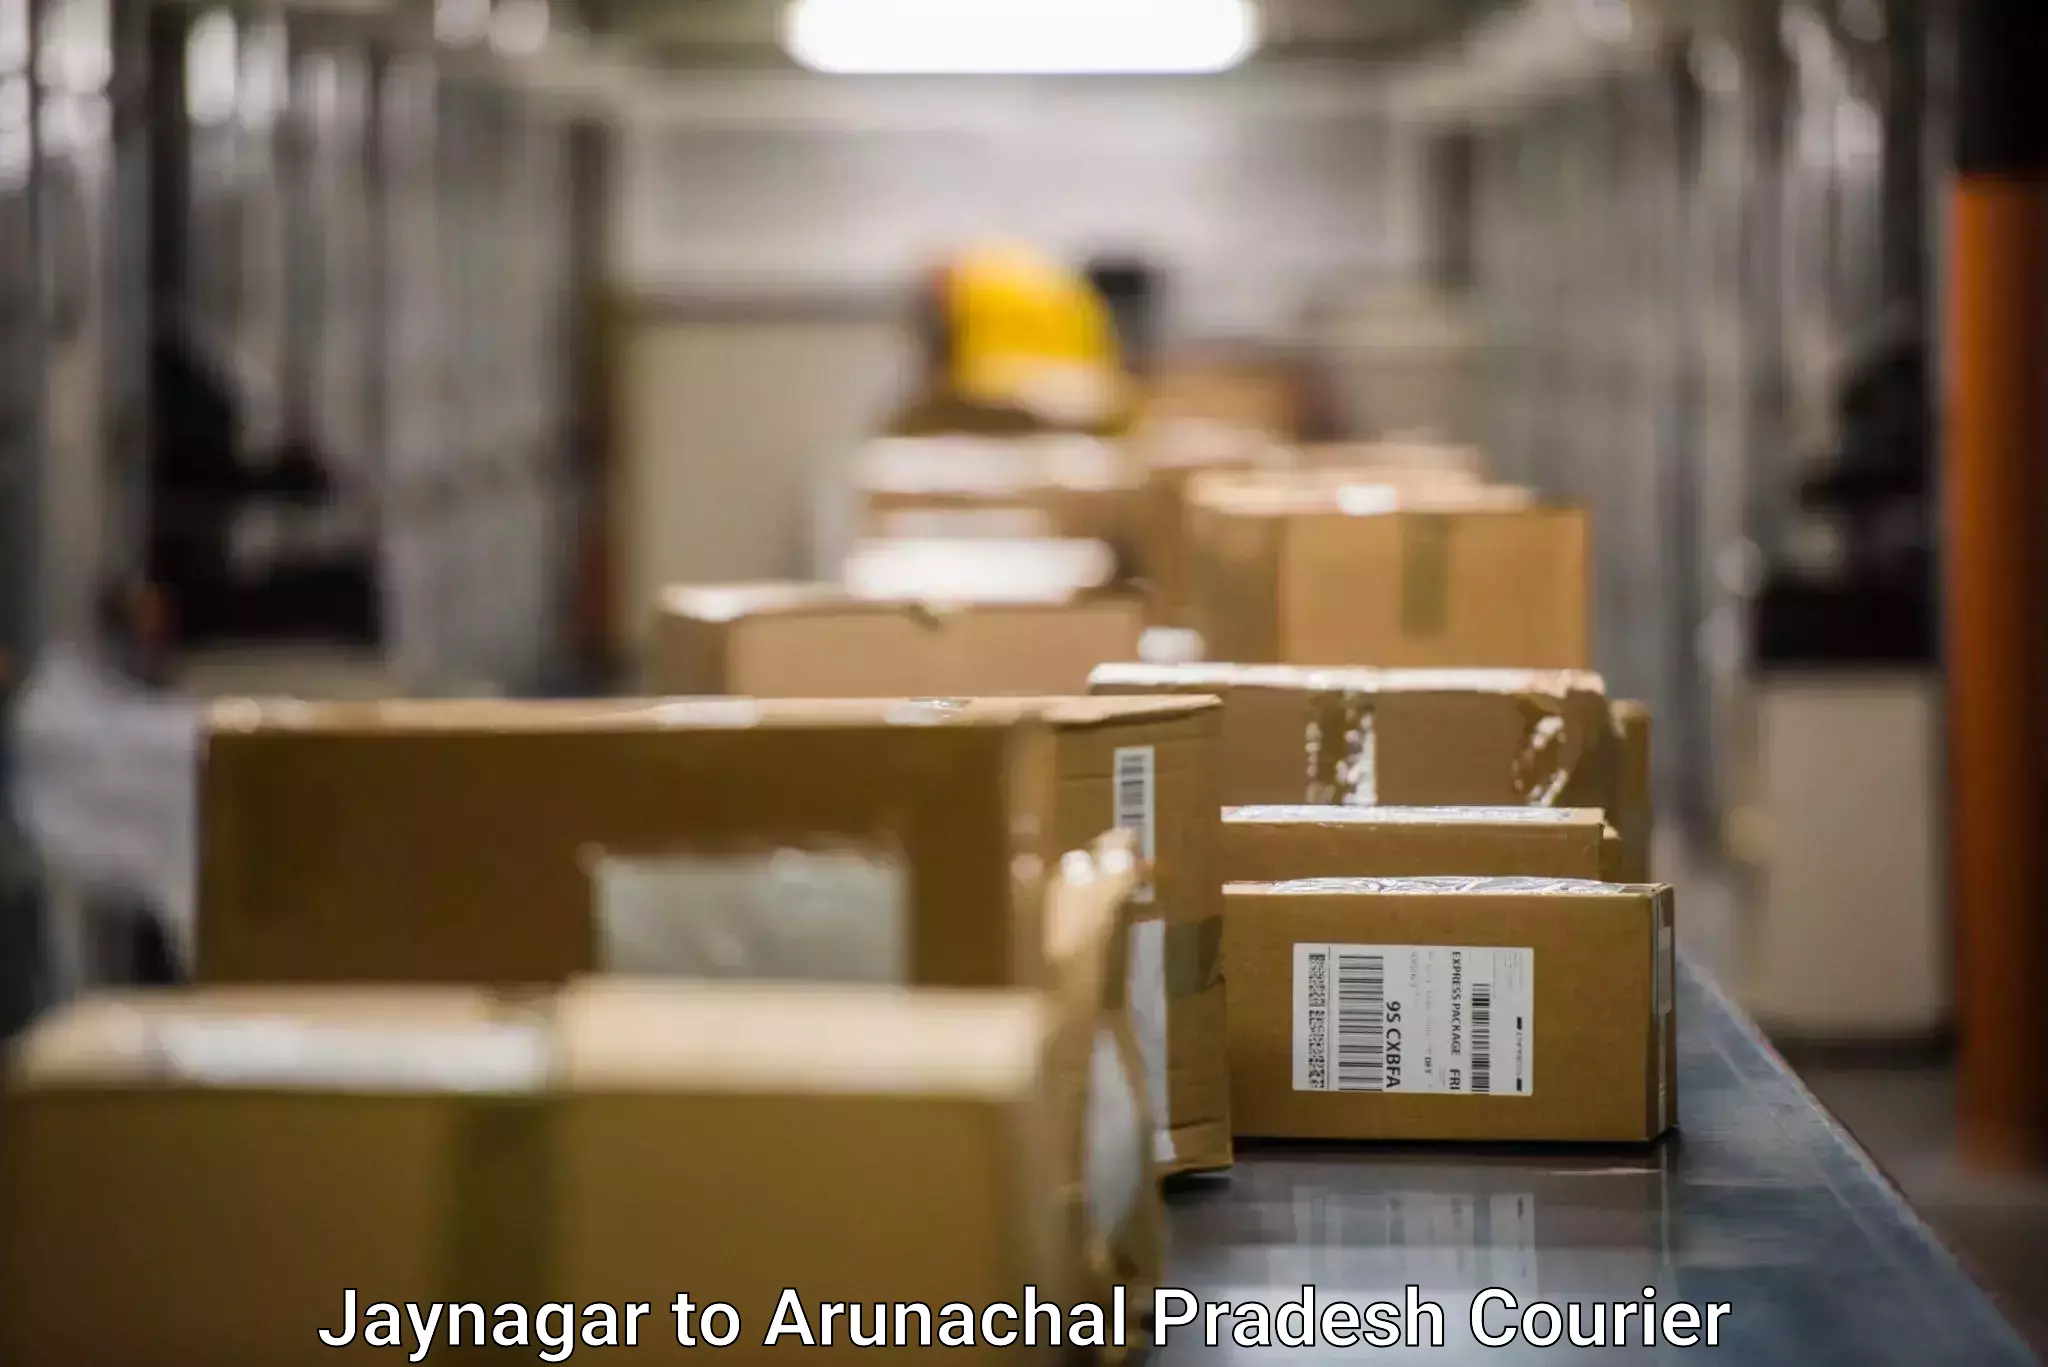 Full-service courier options Jaynagar to Arunachal Pradesh